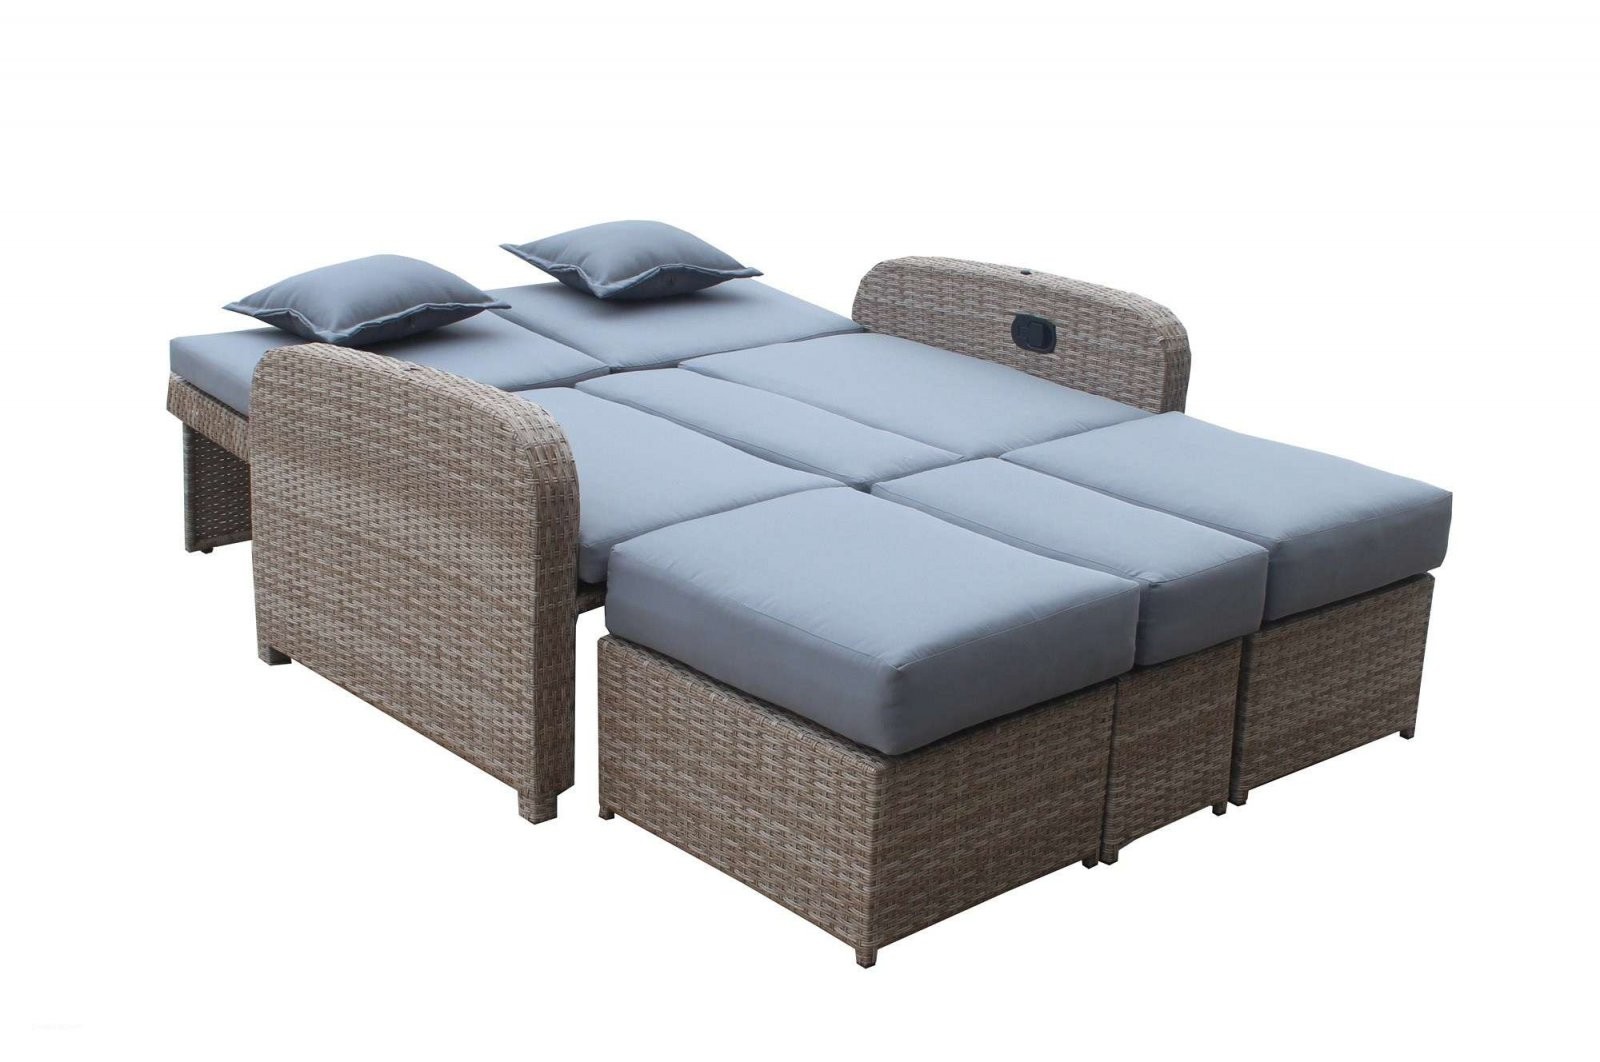 Lounge Sofa Mit Dach Designideen Von Lounge Möbel Paletten von Lounge Sofa Mit Dach Bild